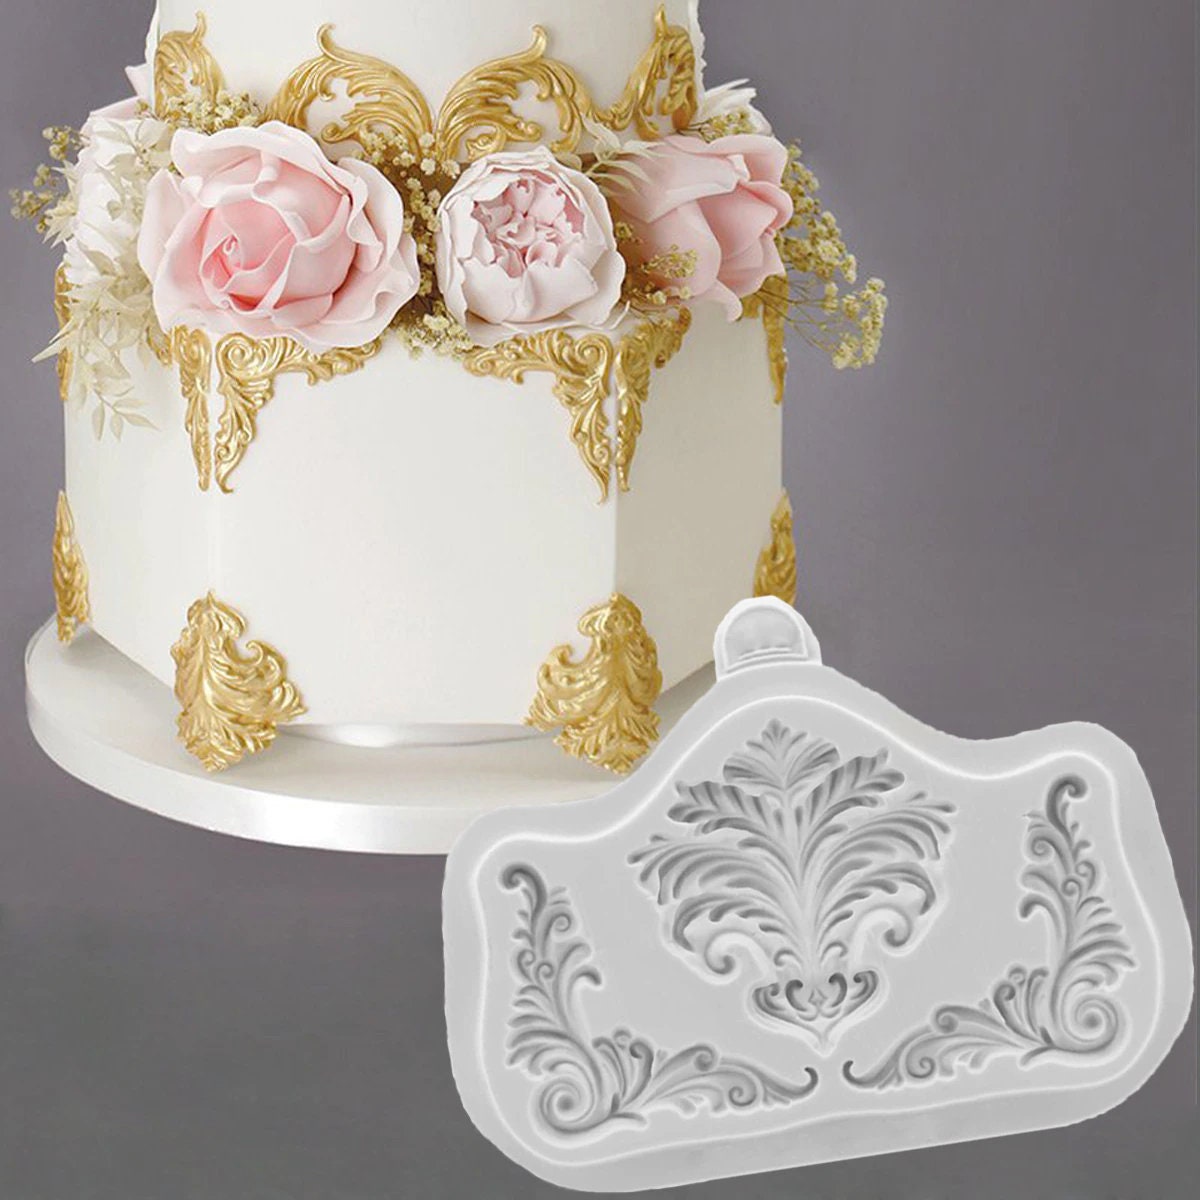 Versace Cake - CakeCentral.com